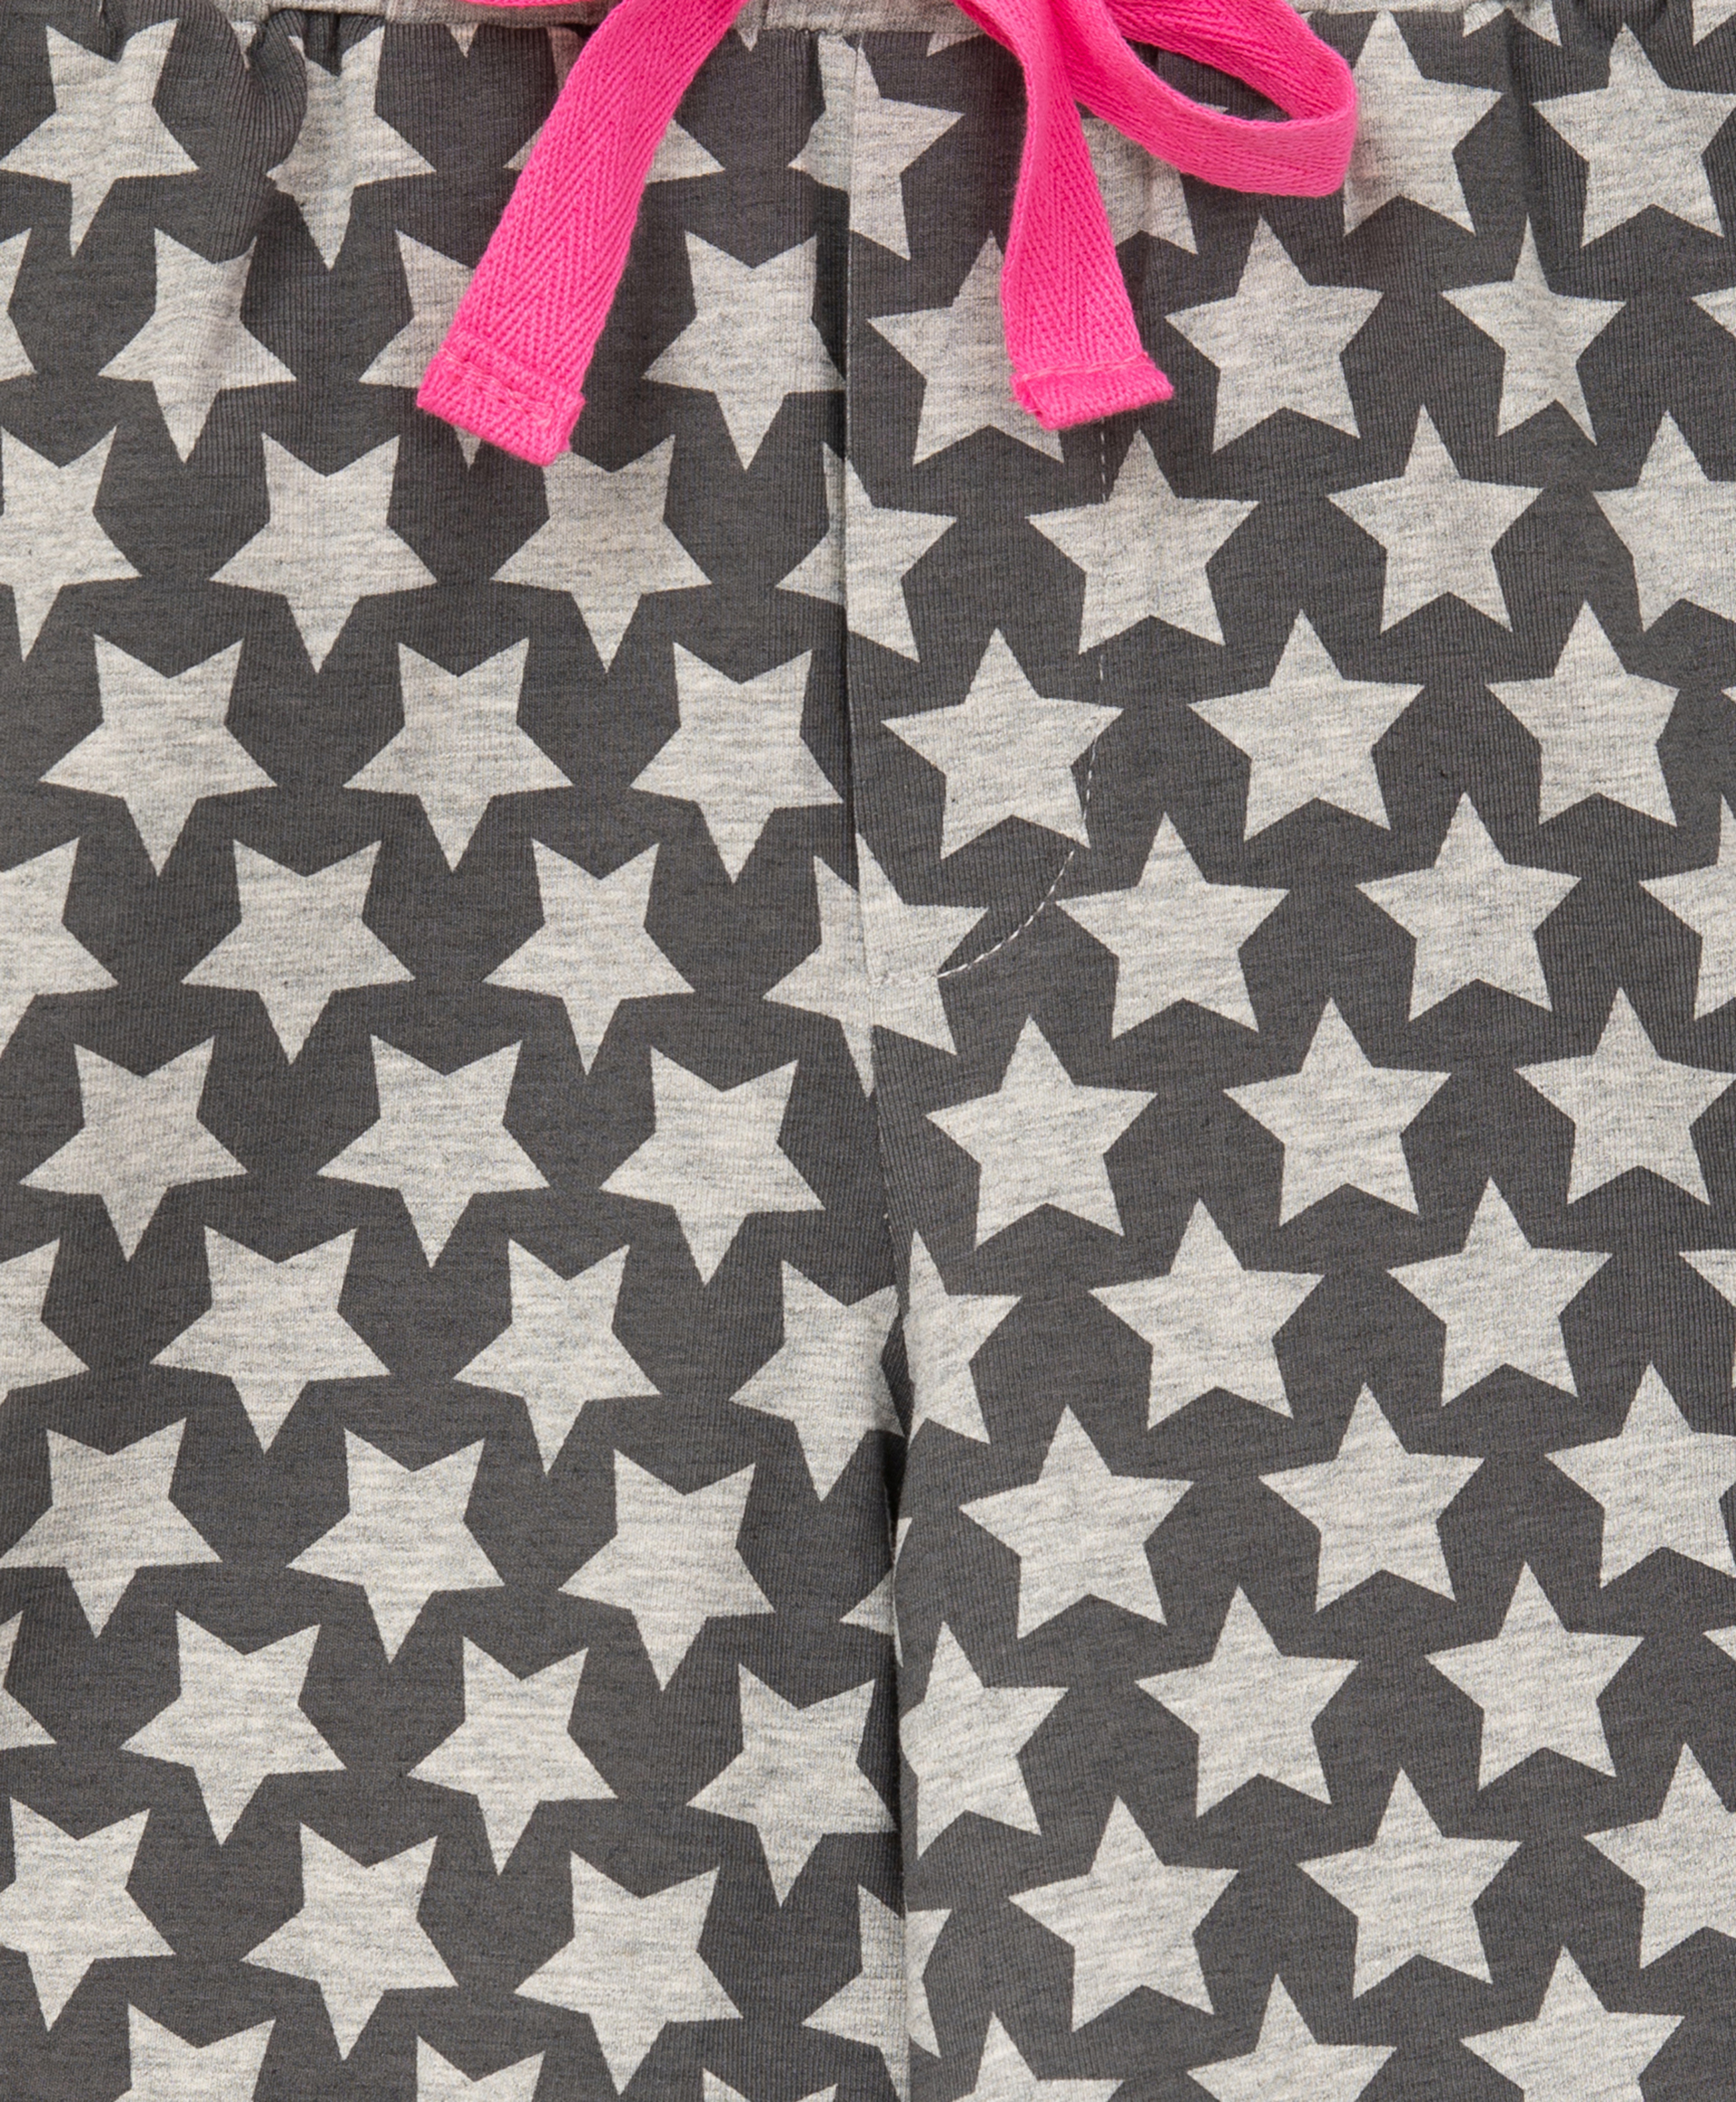 Пижама с принтом розовая Gulliver 22100GC9701, размер 110-116, цвет розовый - фото 5